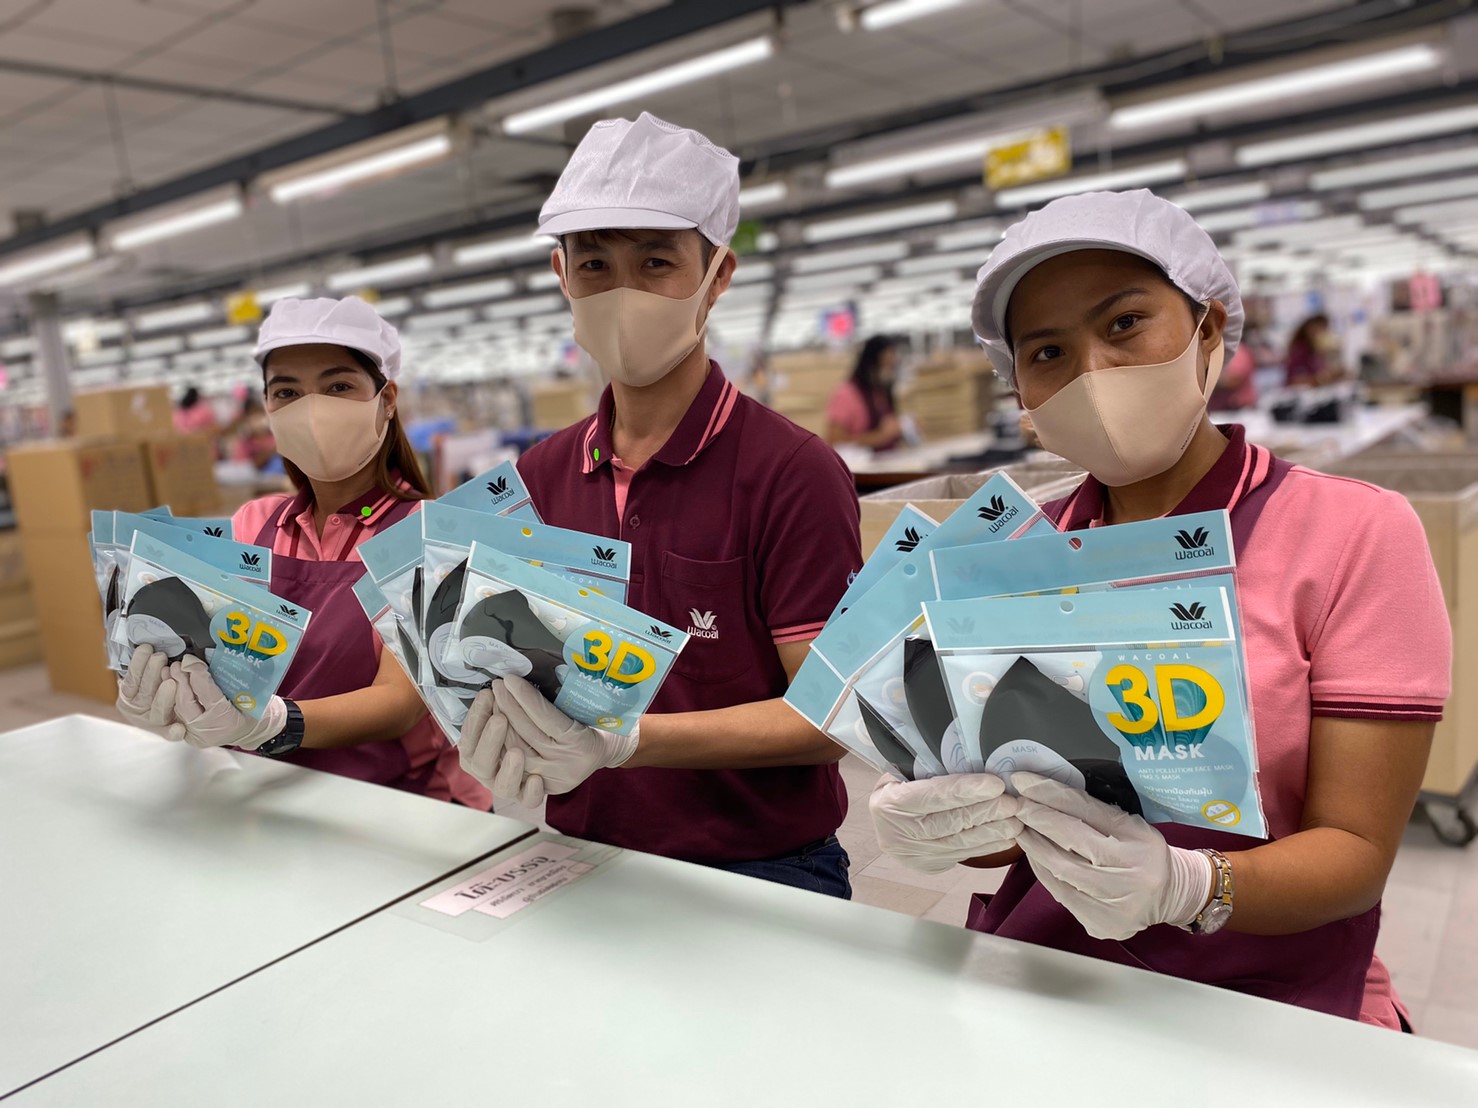 วาโก้เร่งผลิตหน้ากากแจกฟรี จับมือคนไทยผ่านวิกฤติ โควิด-19 ปรับเป้าผลิตเป็น 200,000 ชิ้น